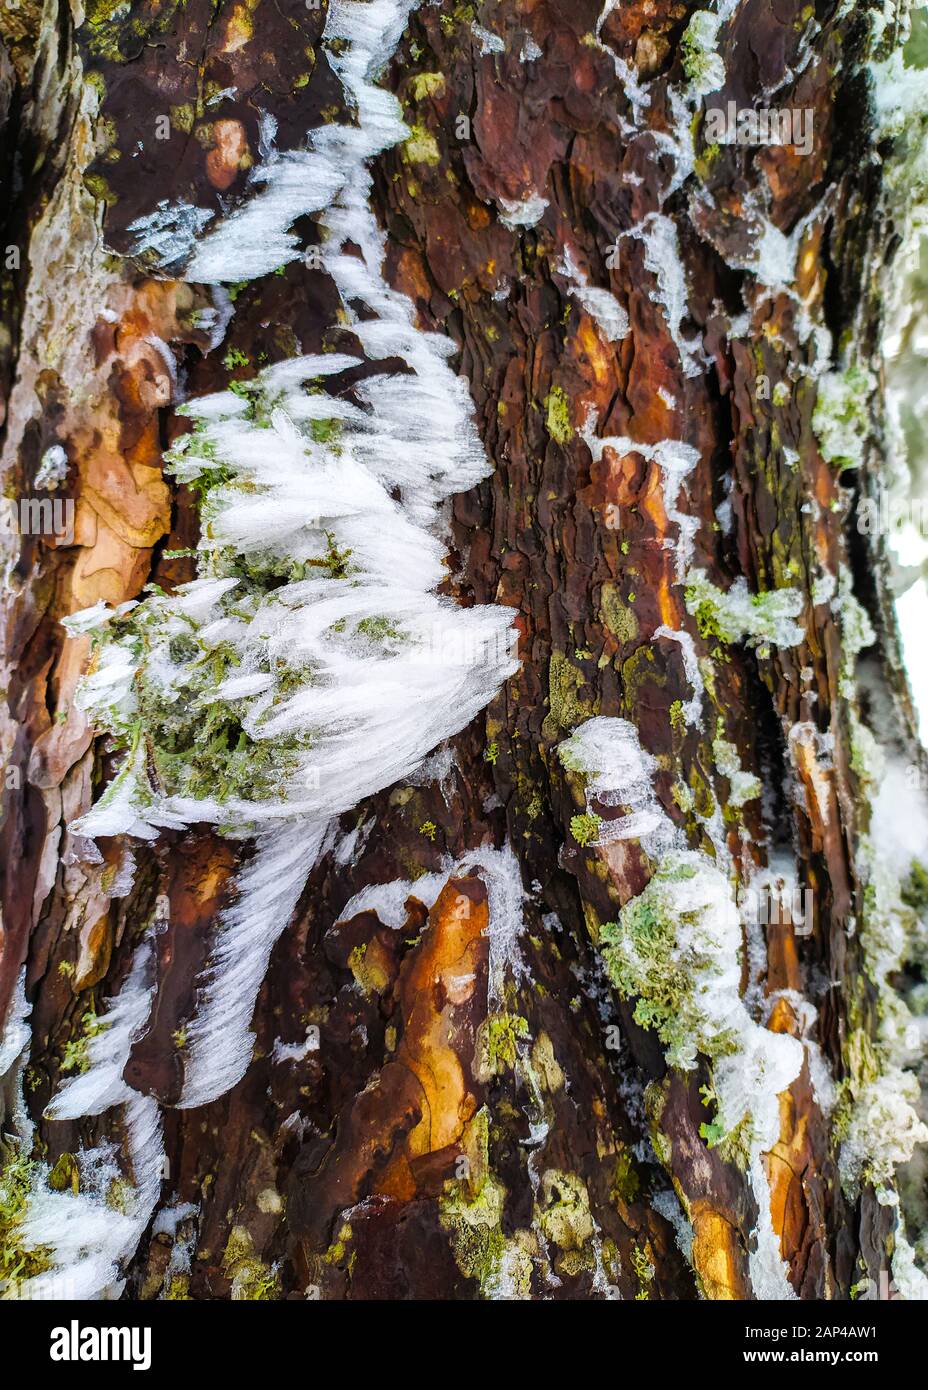 Gros plan d'une branche d'arbre gelée sur fond enneigé à Parnitha Mountain, Grèce. Parnitha est une chaîne de montagnes densément boisée au nord d'Athènes Banque D'Images